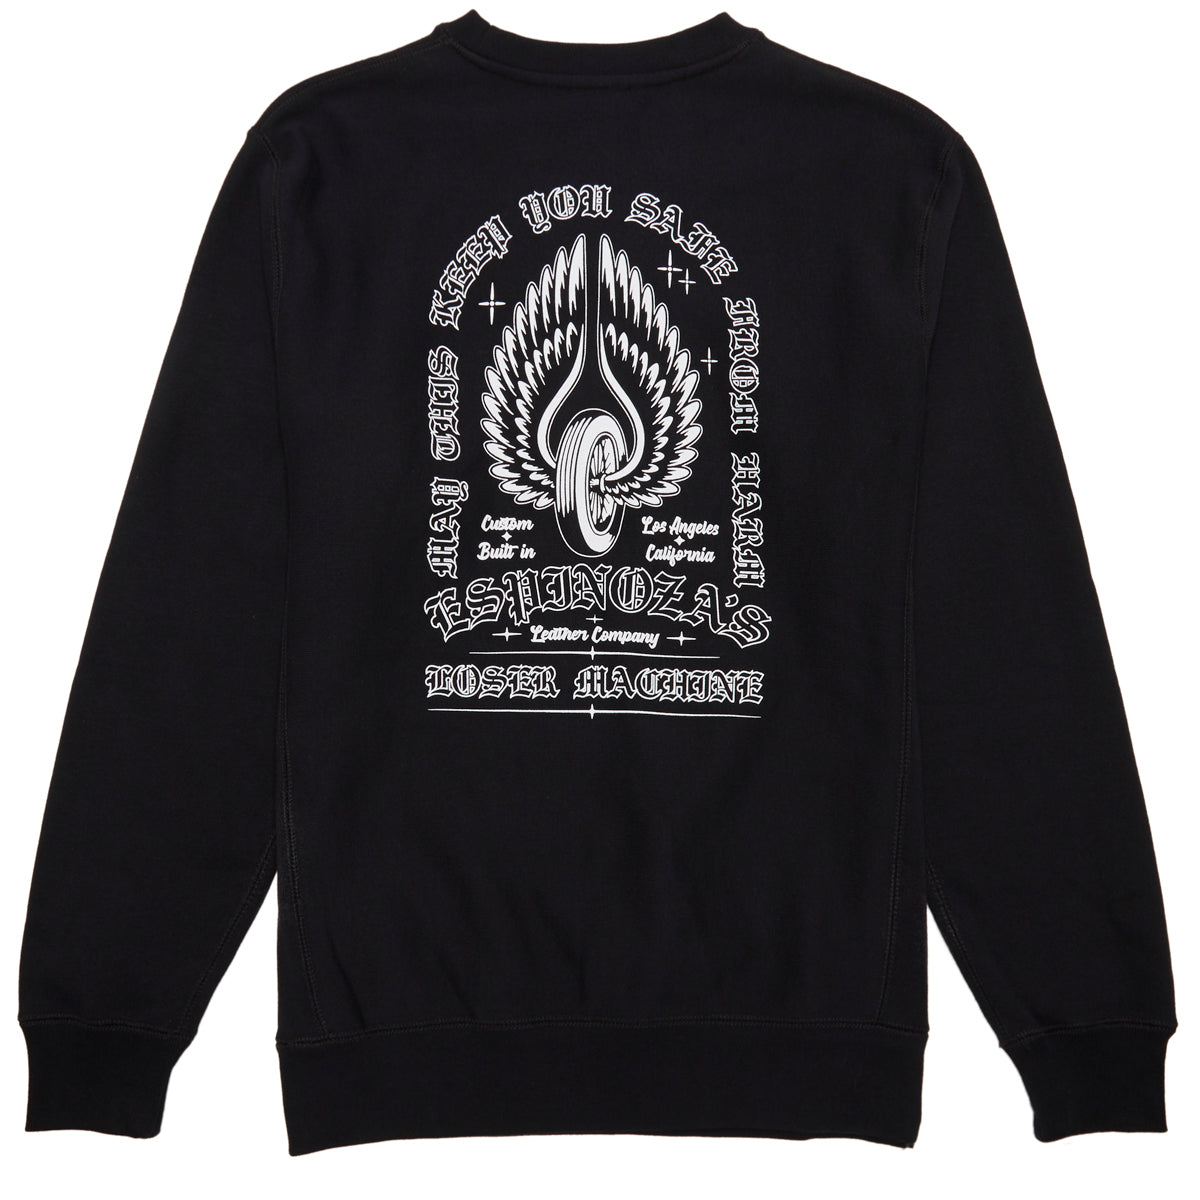 Loser Machine x Espinozas Protected Sweatshirt - Black image 1